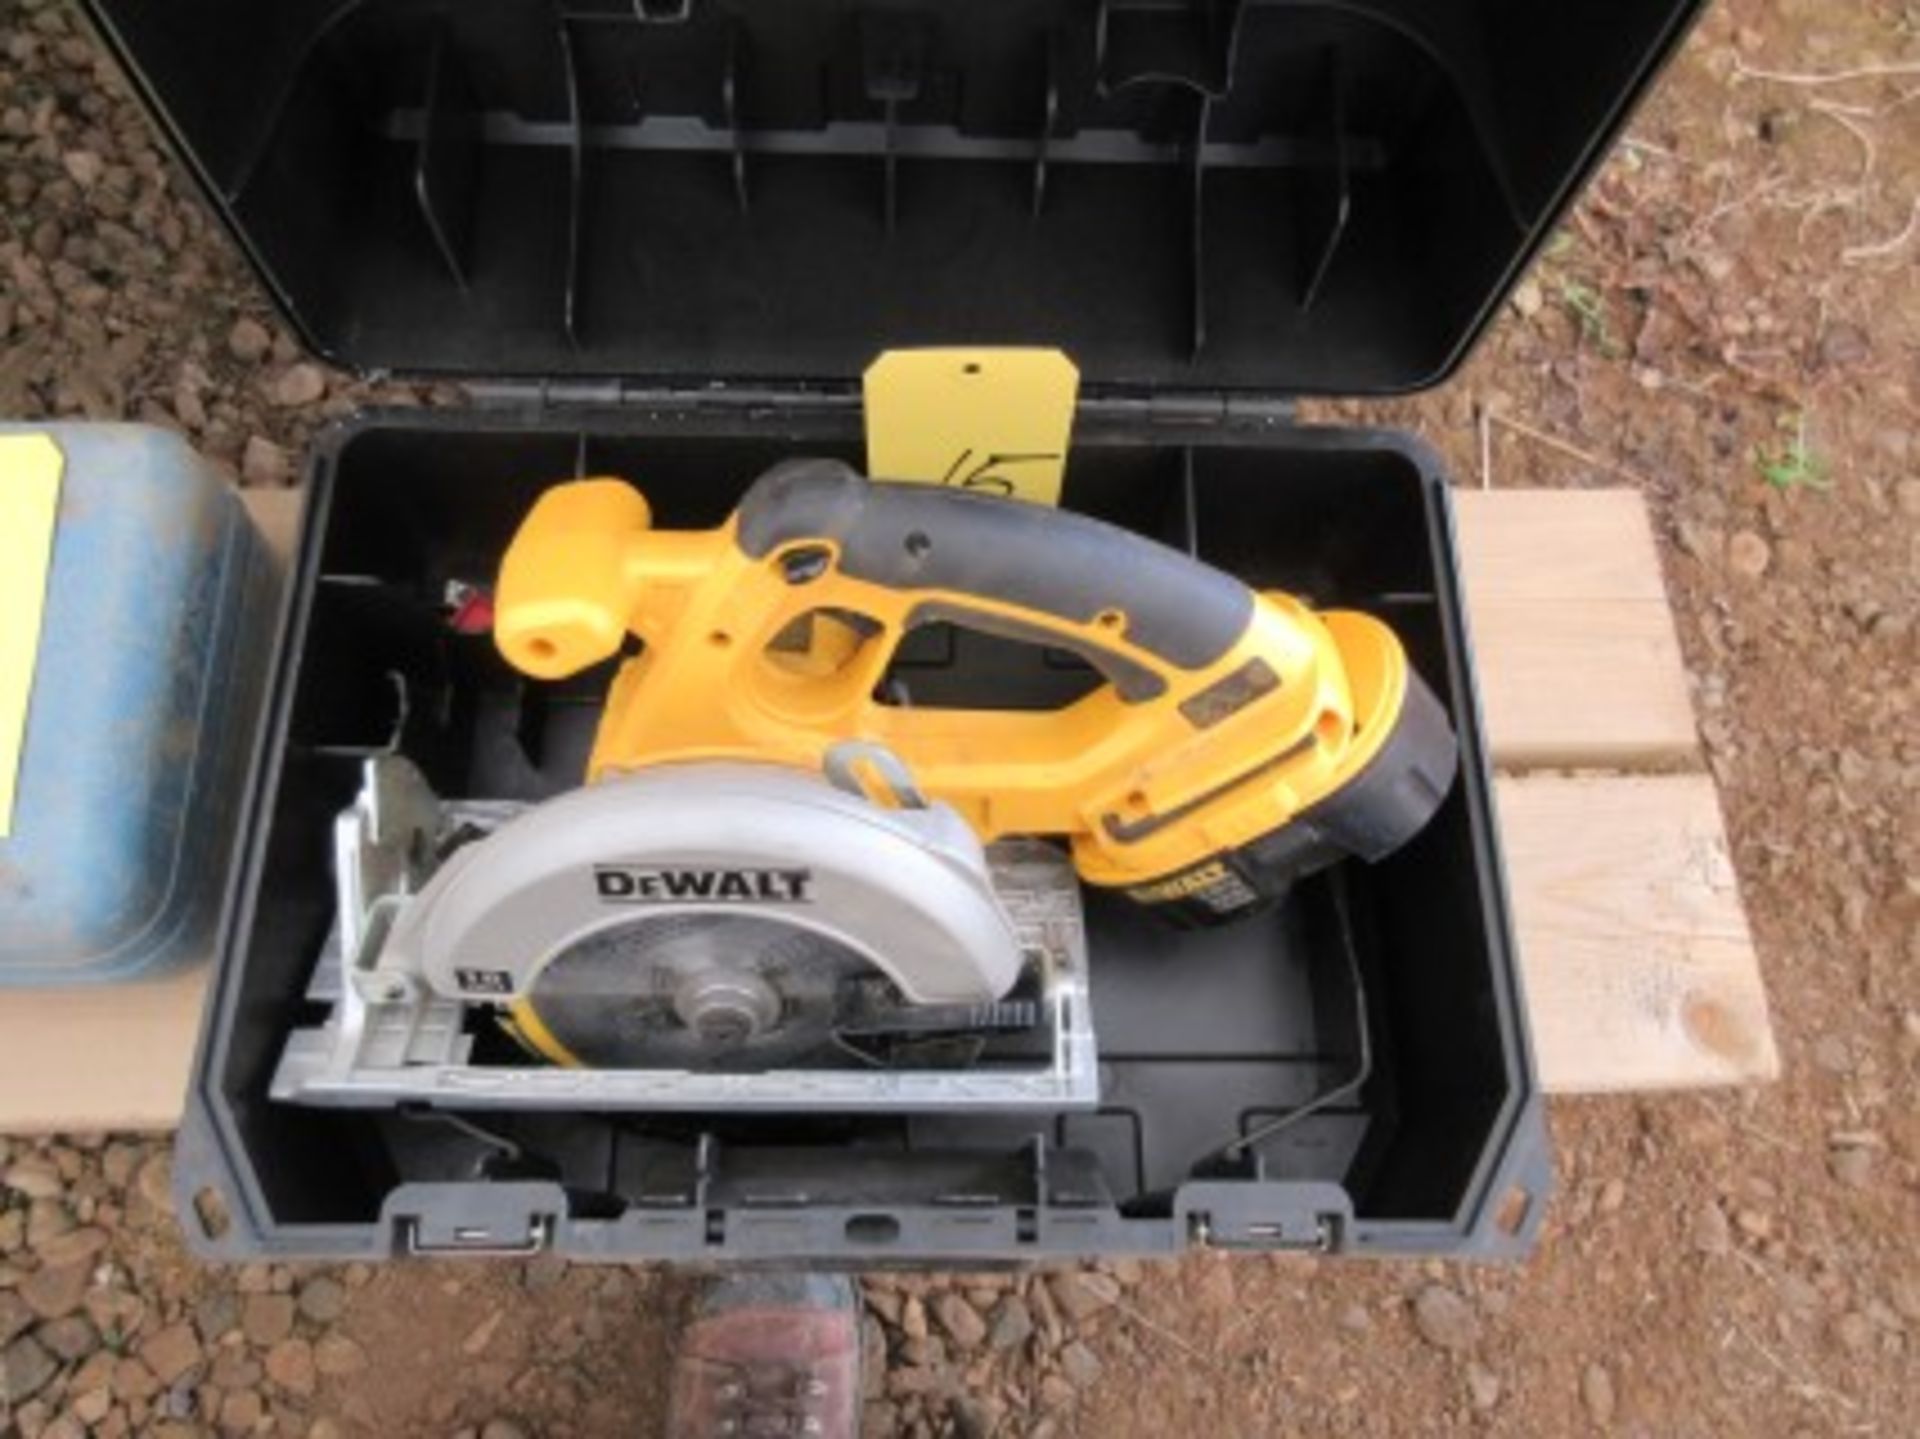 Dewalt 18V 6'' cordless circular saw in case w/ battery